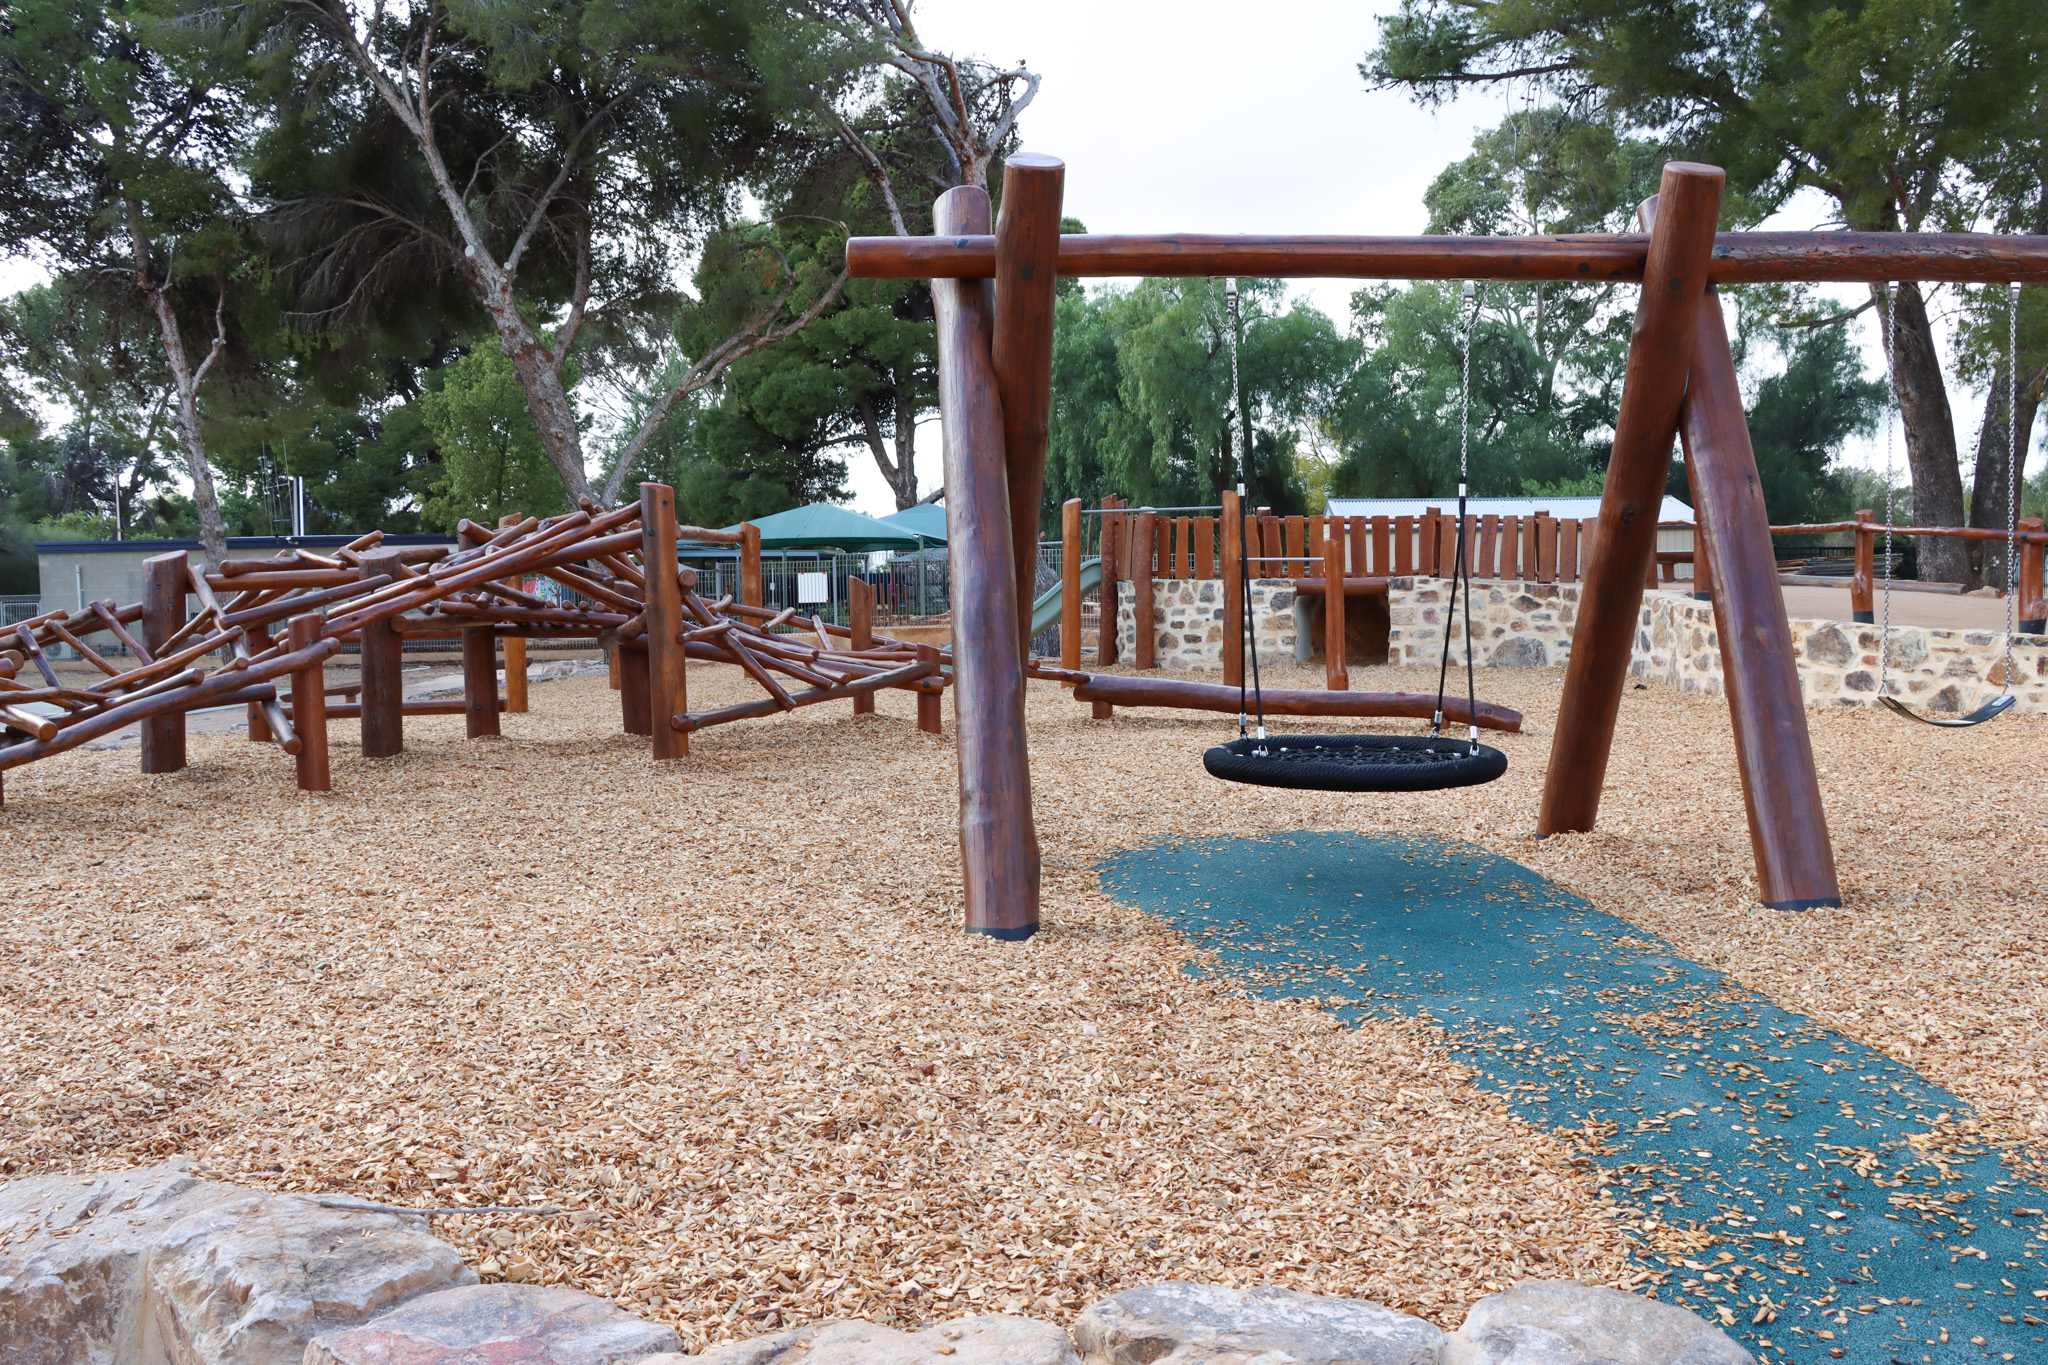 playground image